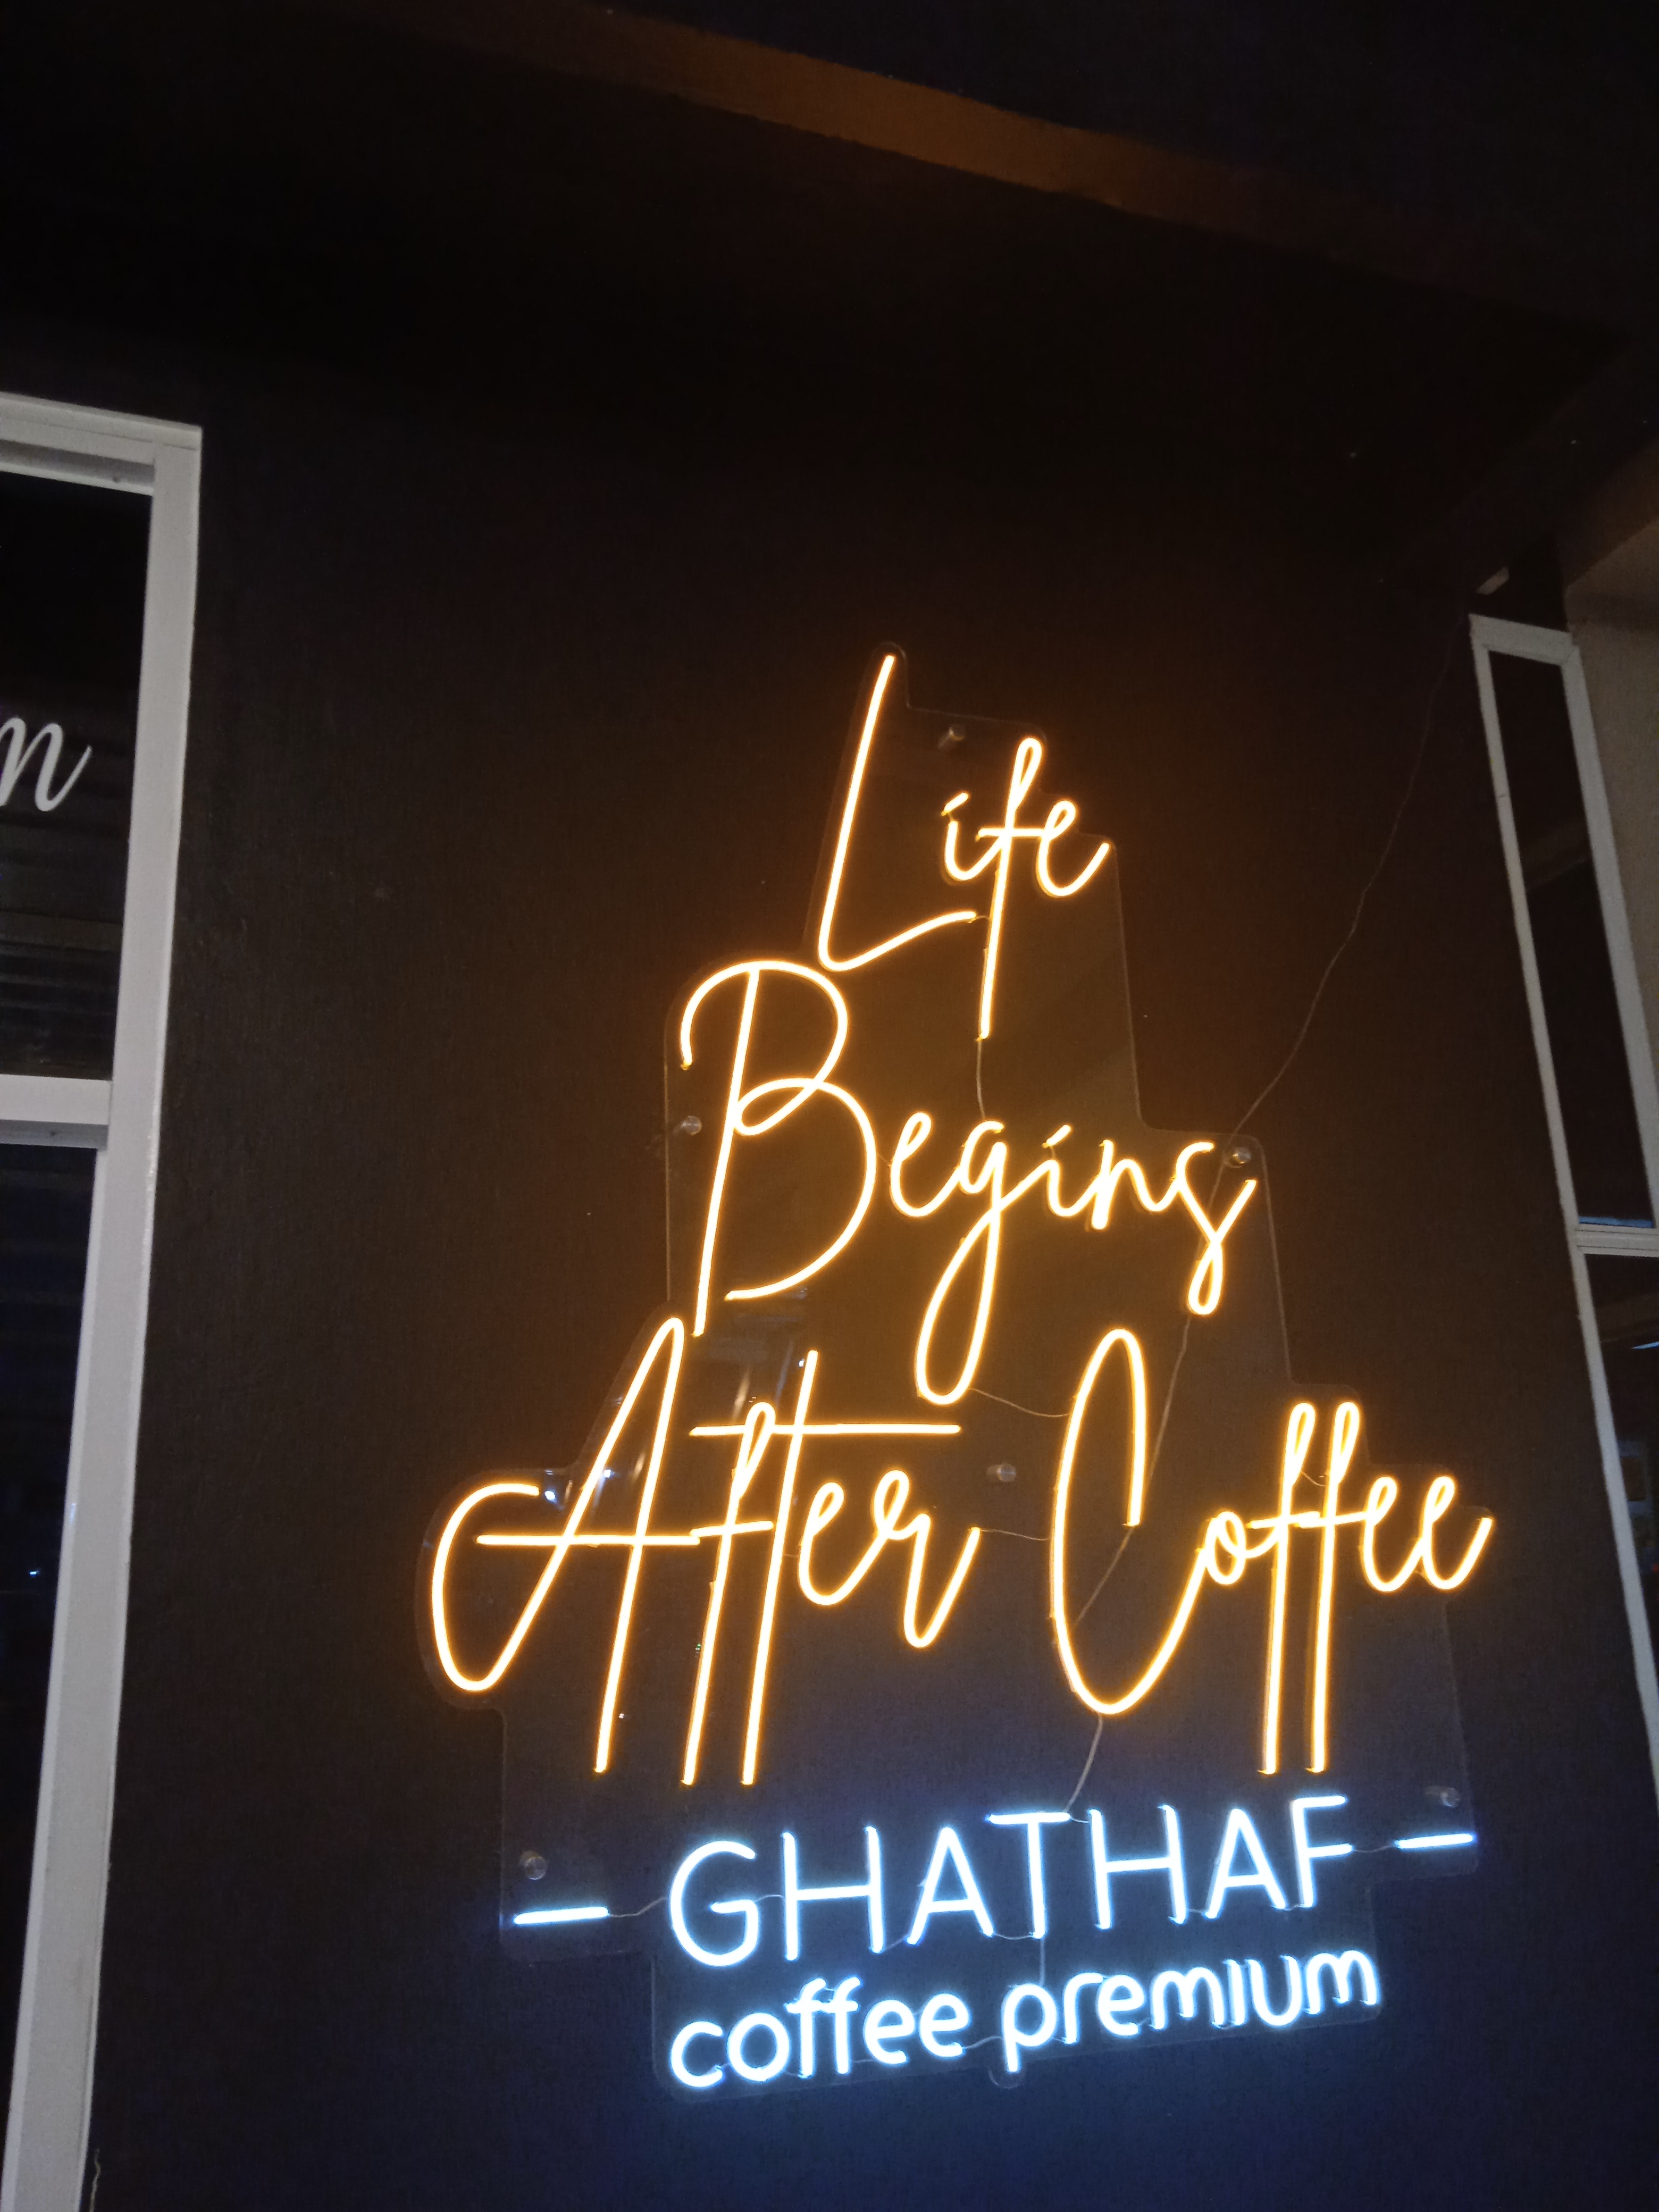 @ramadhan04/ghataf-coffeeshop